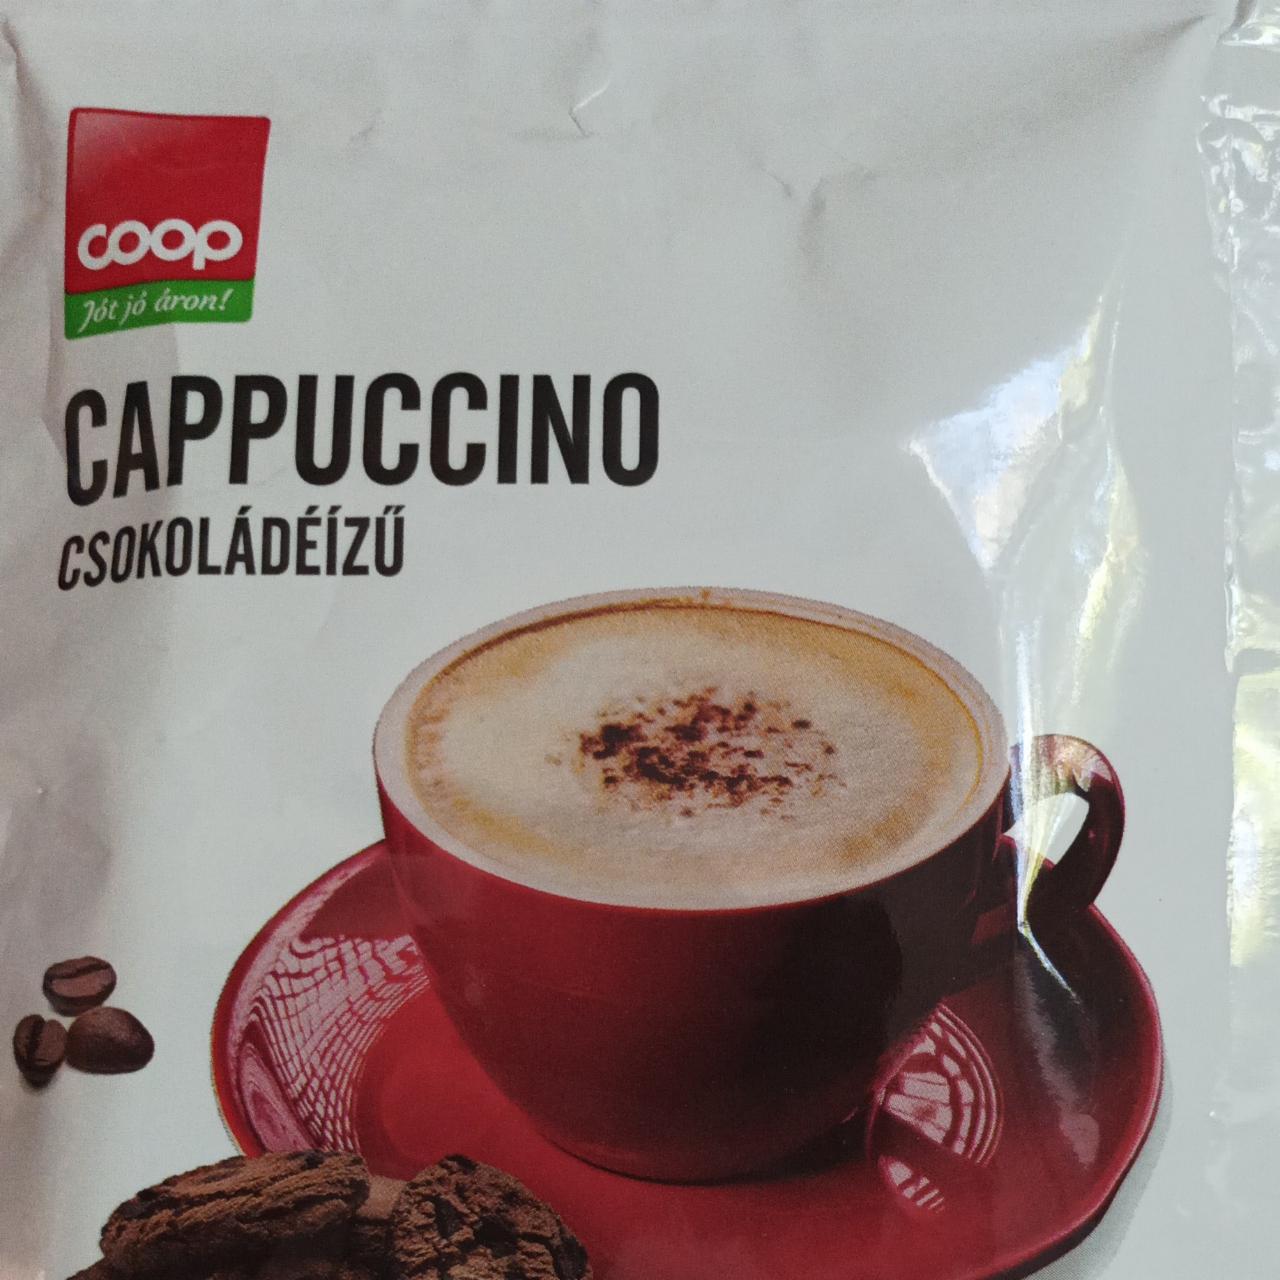 Képek - Capuccino csokoládéízű Coop